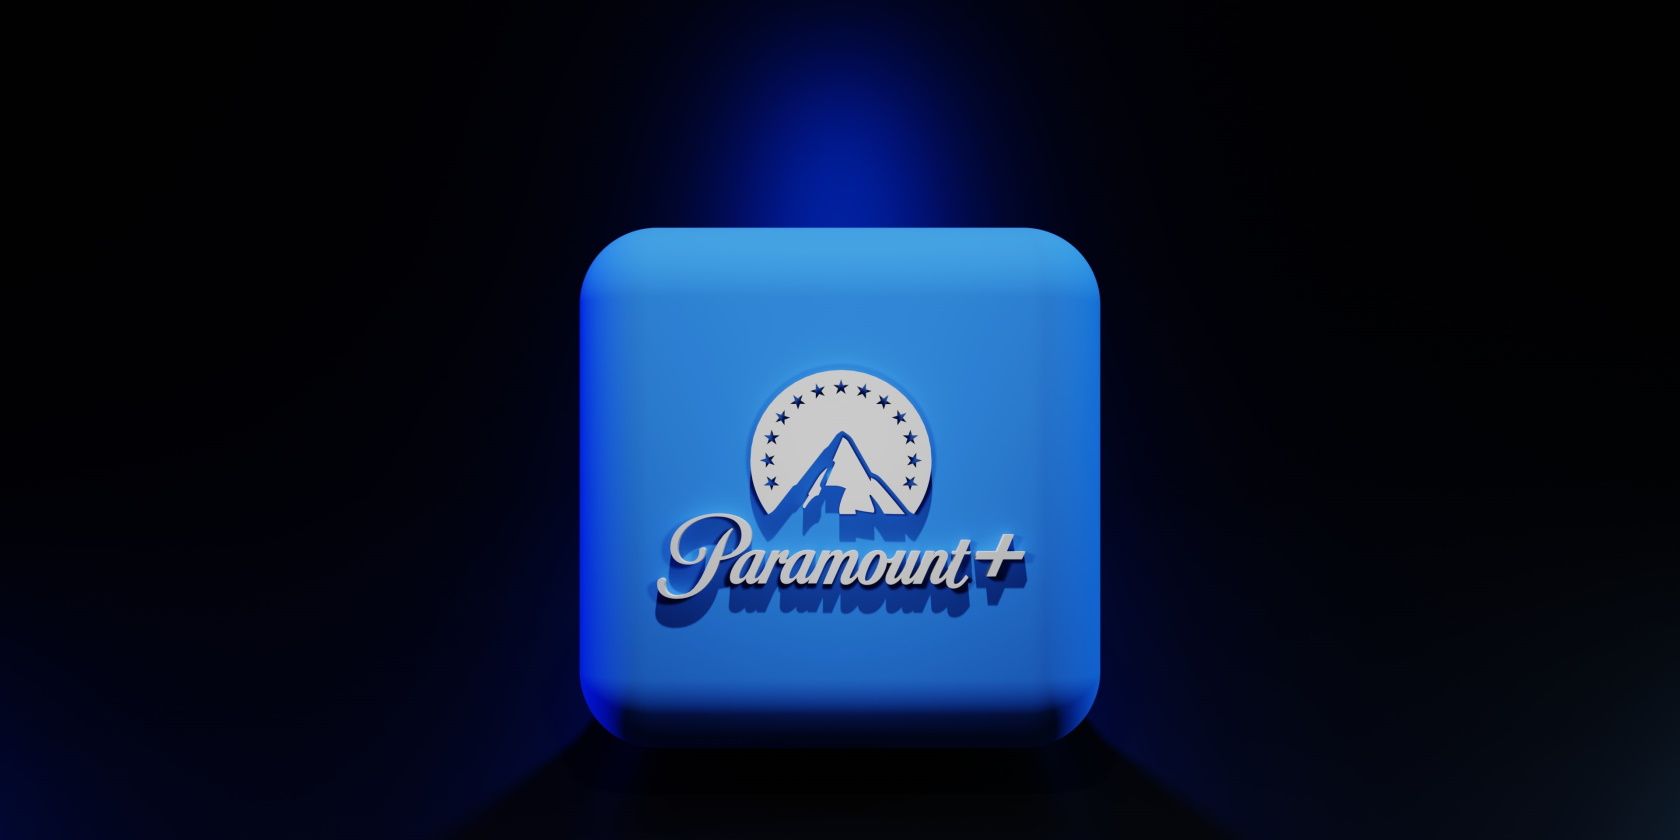 Paramount cộng với hình ảnh nổi bật